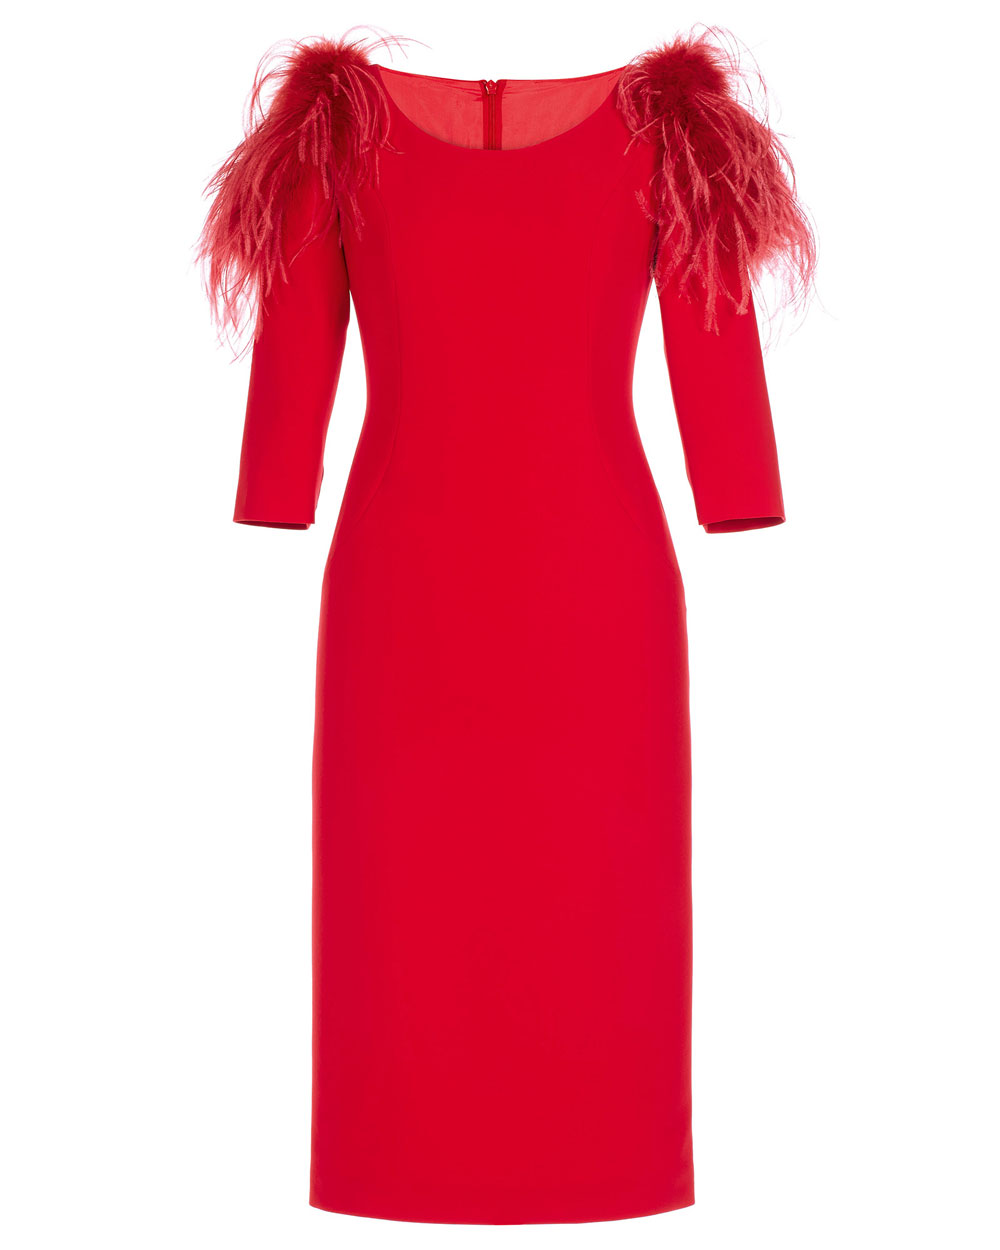 Vestido-corto-rojo-plumas-hombro-Teresa-Ripoll